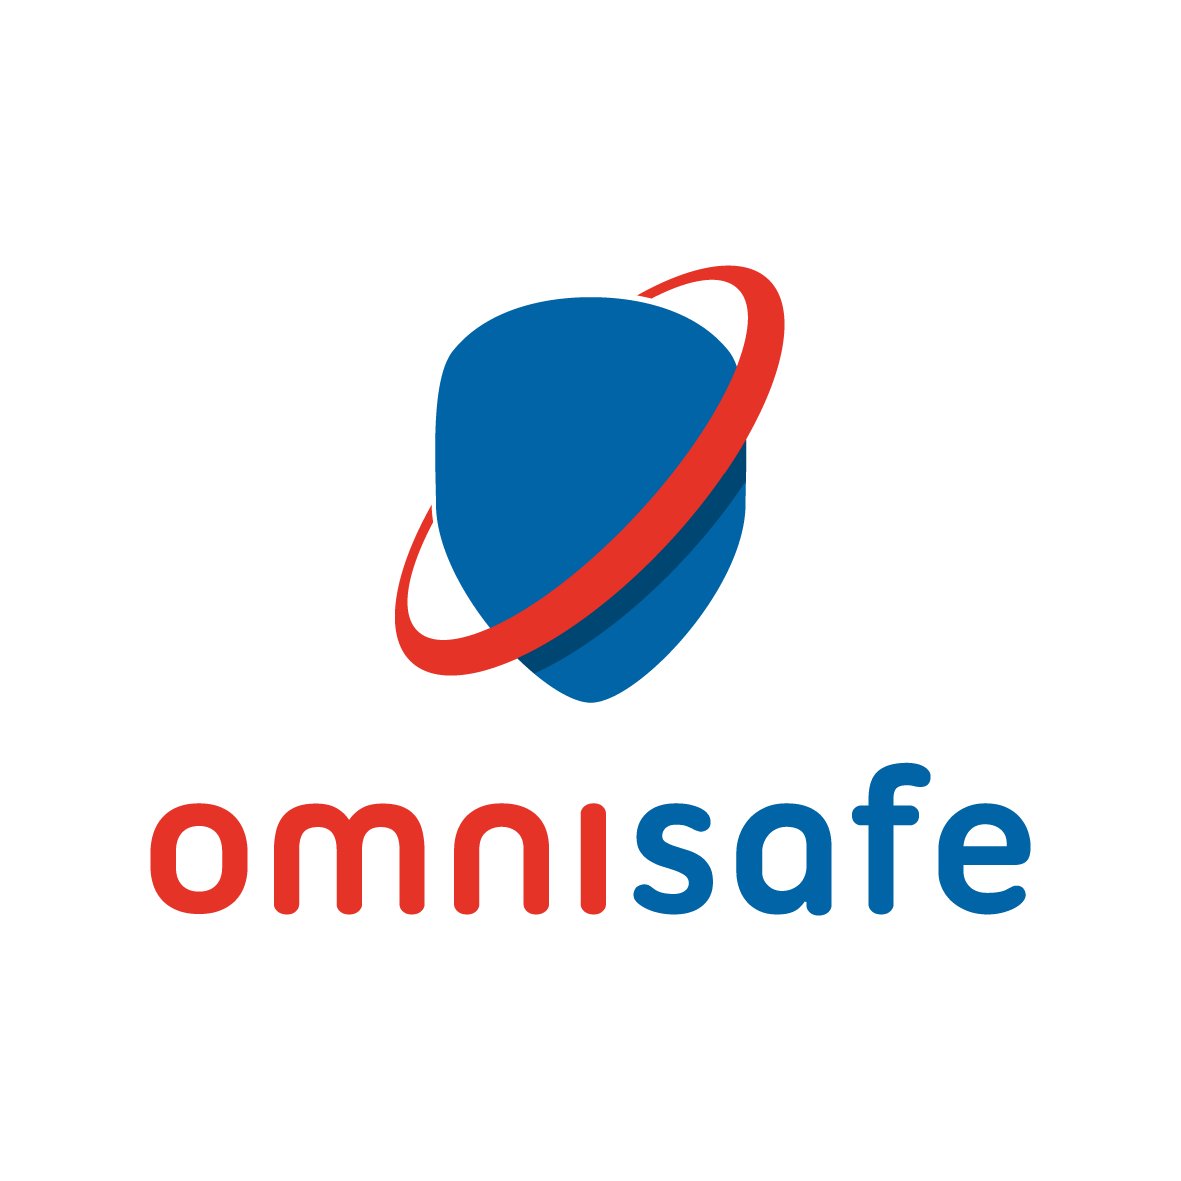 Omnisafe is specialist in persoonlijke beschermingsmiddelen.  Je kan ons vinden op de  Zuiderring 34, te Genk.
T+32 89 69 99 17